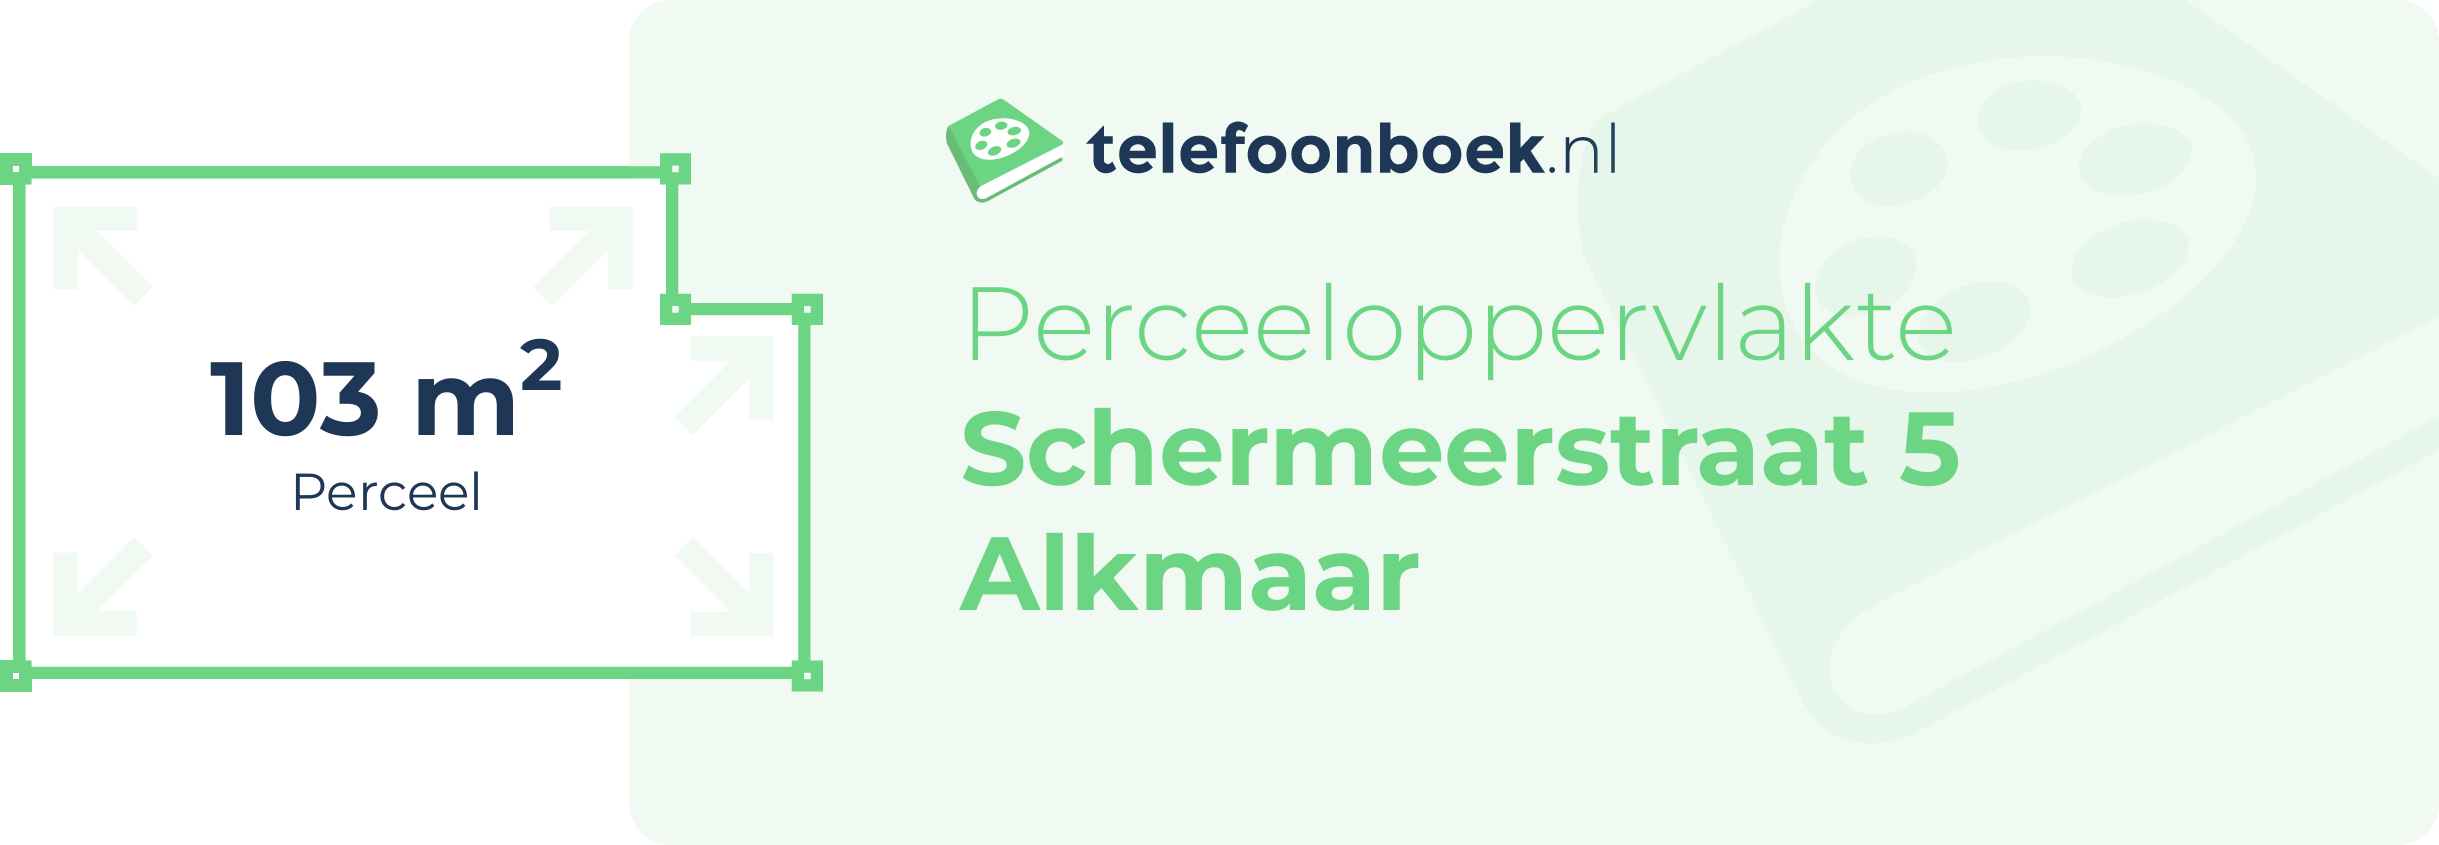 Perceeloppervlakte Schermeerstraat 5 Alkmaar